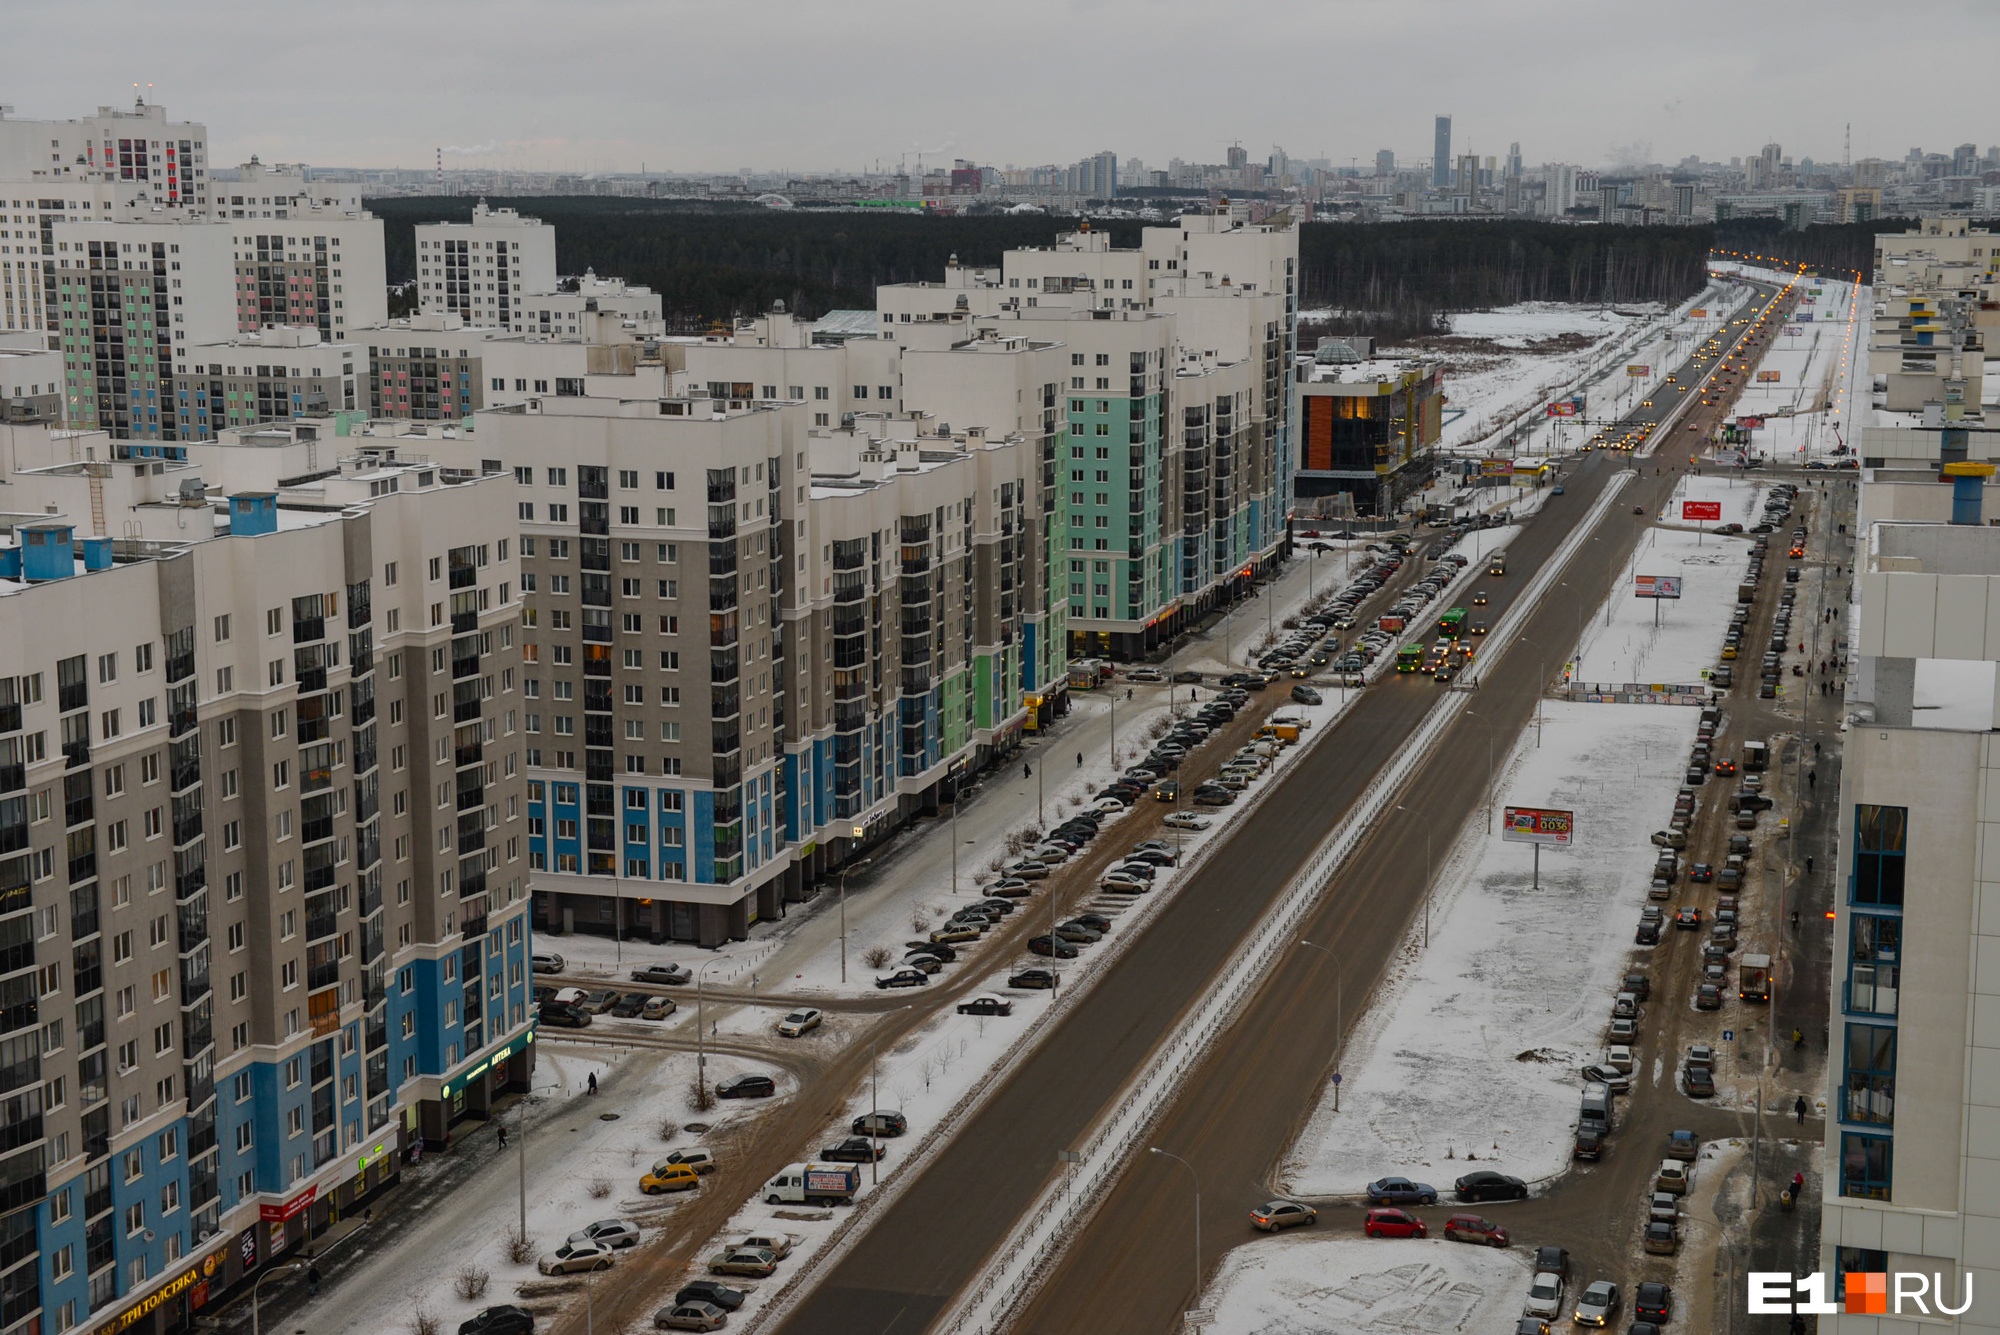 Екатеринбургу выделили 700 млн рублей на строительство дорог. Но только один район получит их